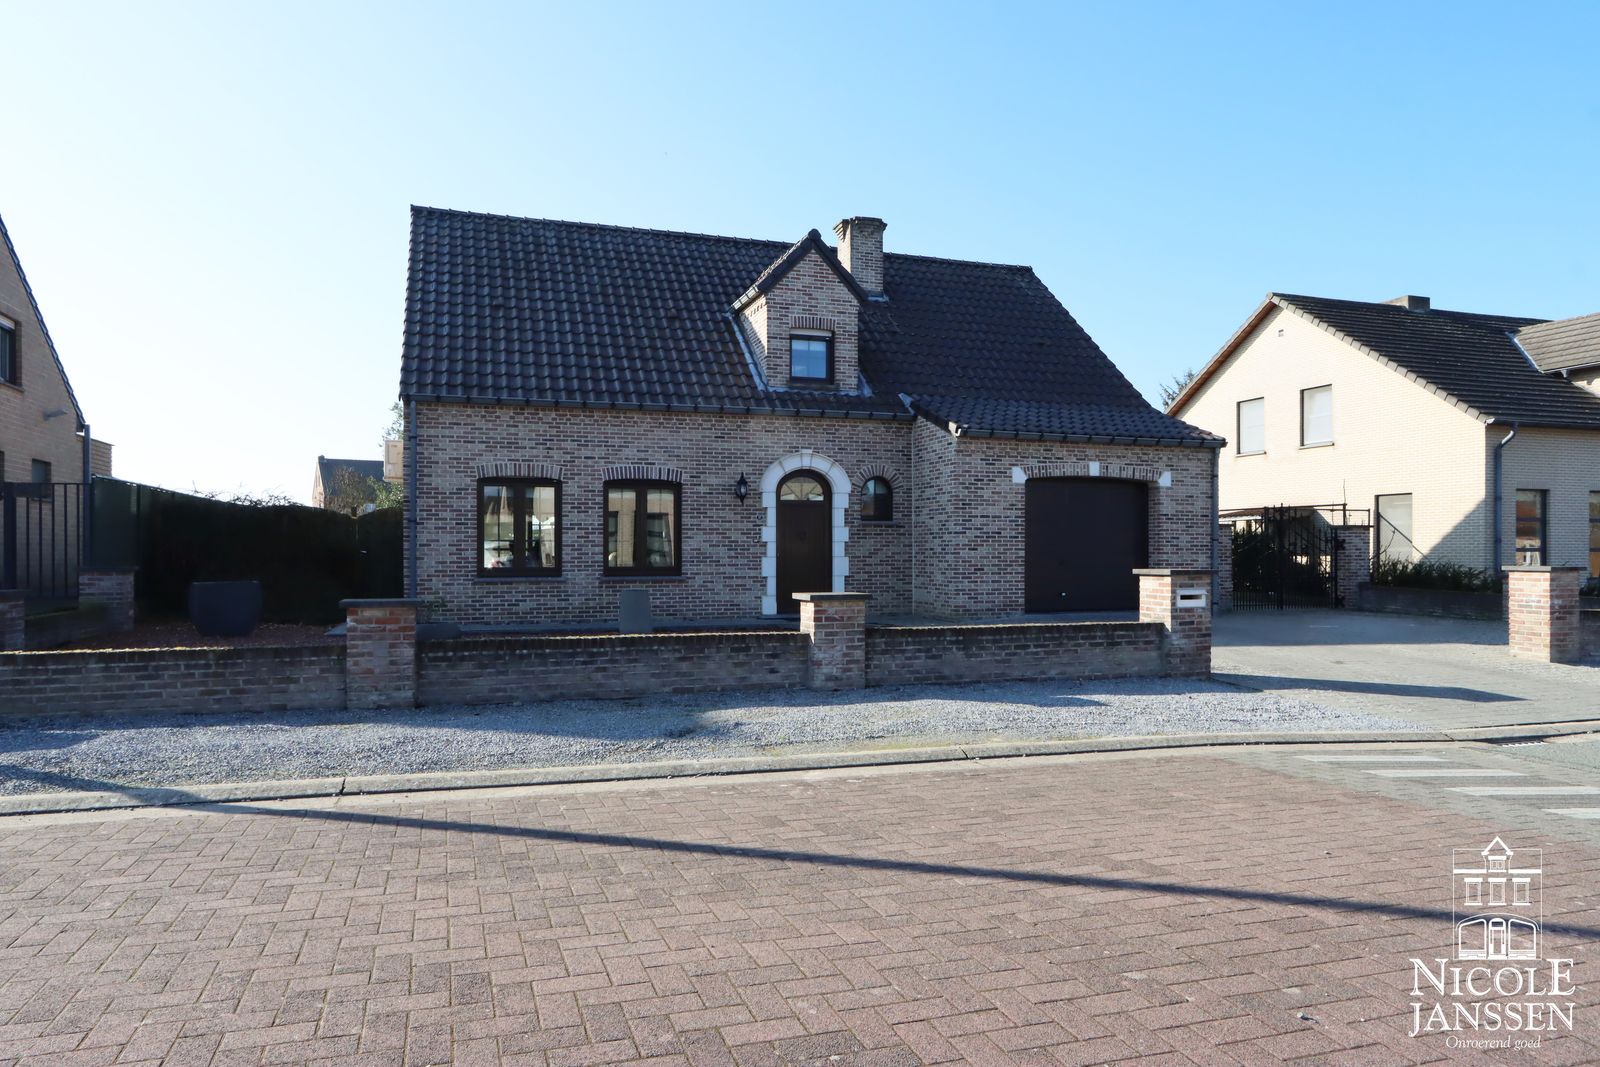 1 Nicole Janssen - huis te koop - H Van Veldekesstraat 17 te Maaseik - voorzijde2.jpg